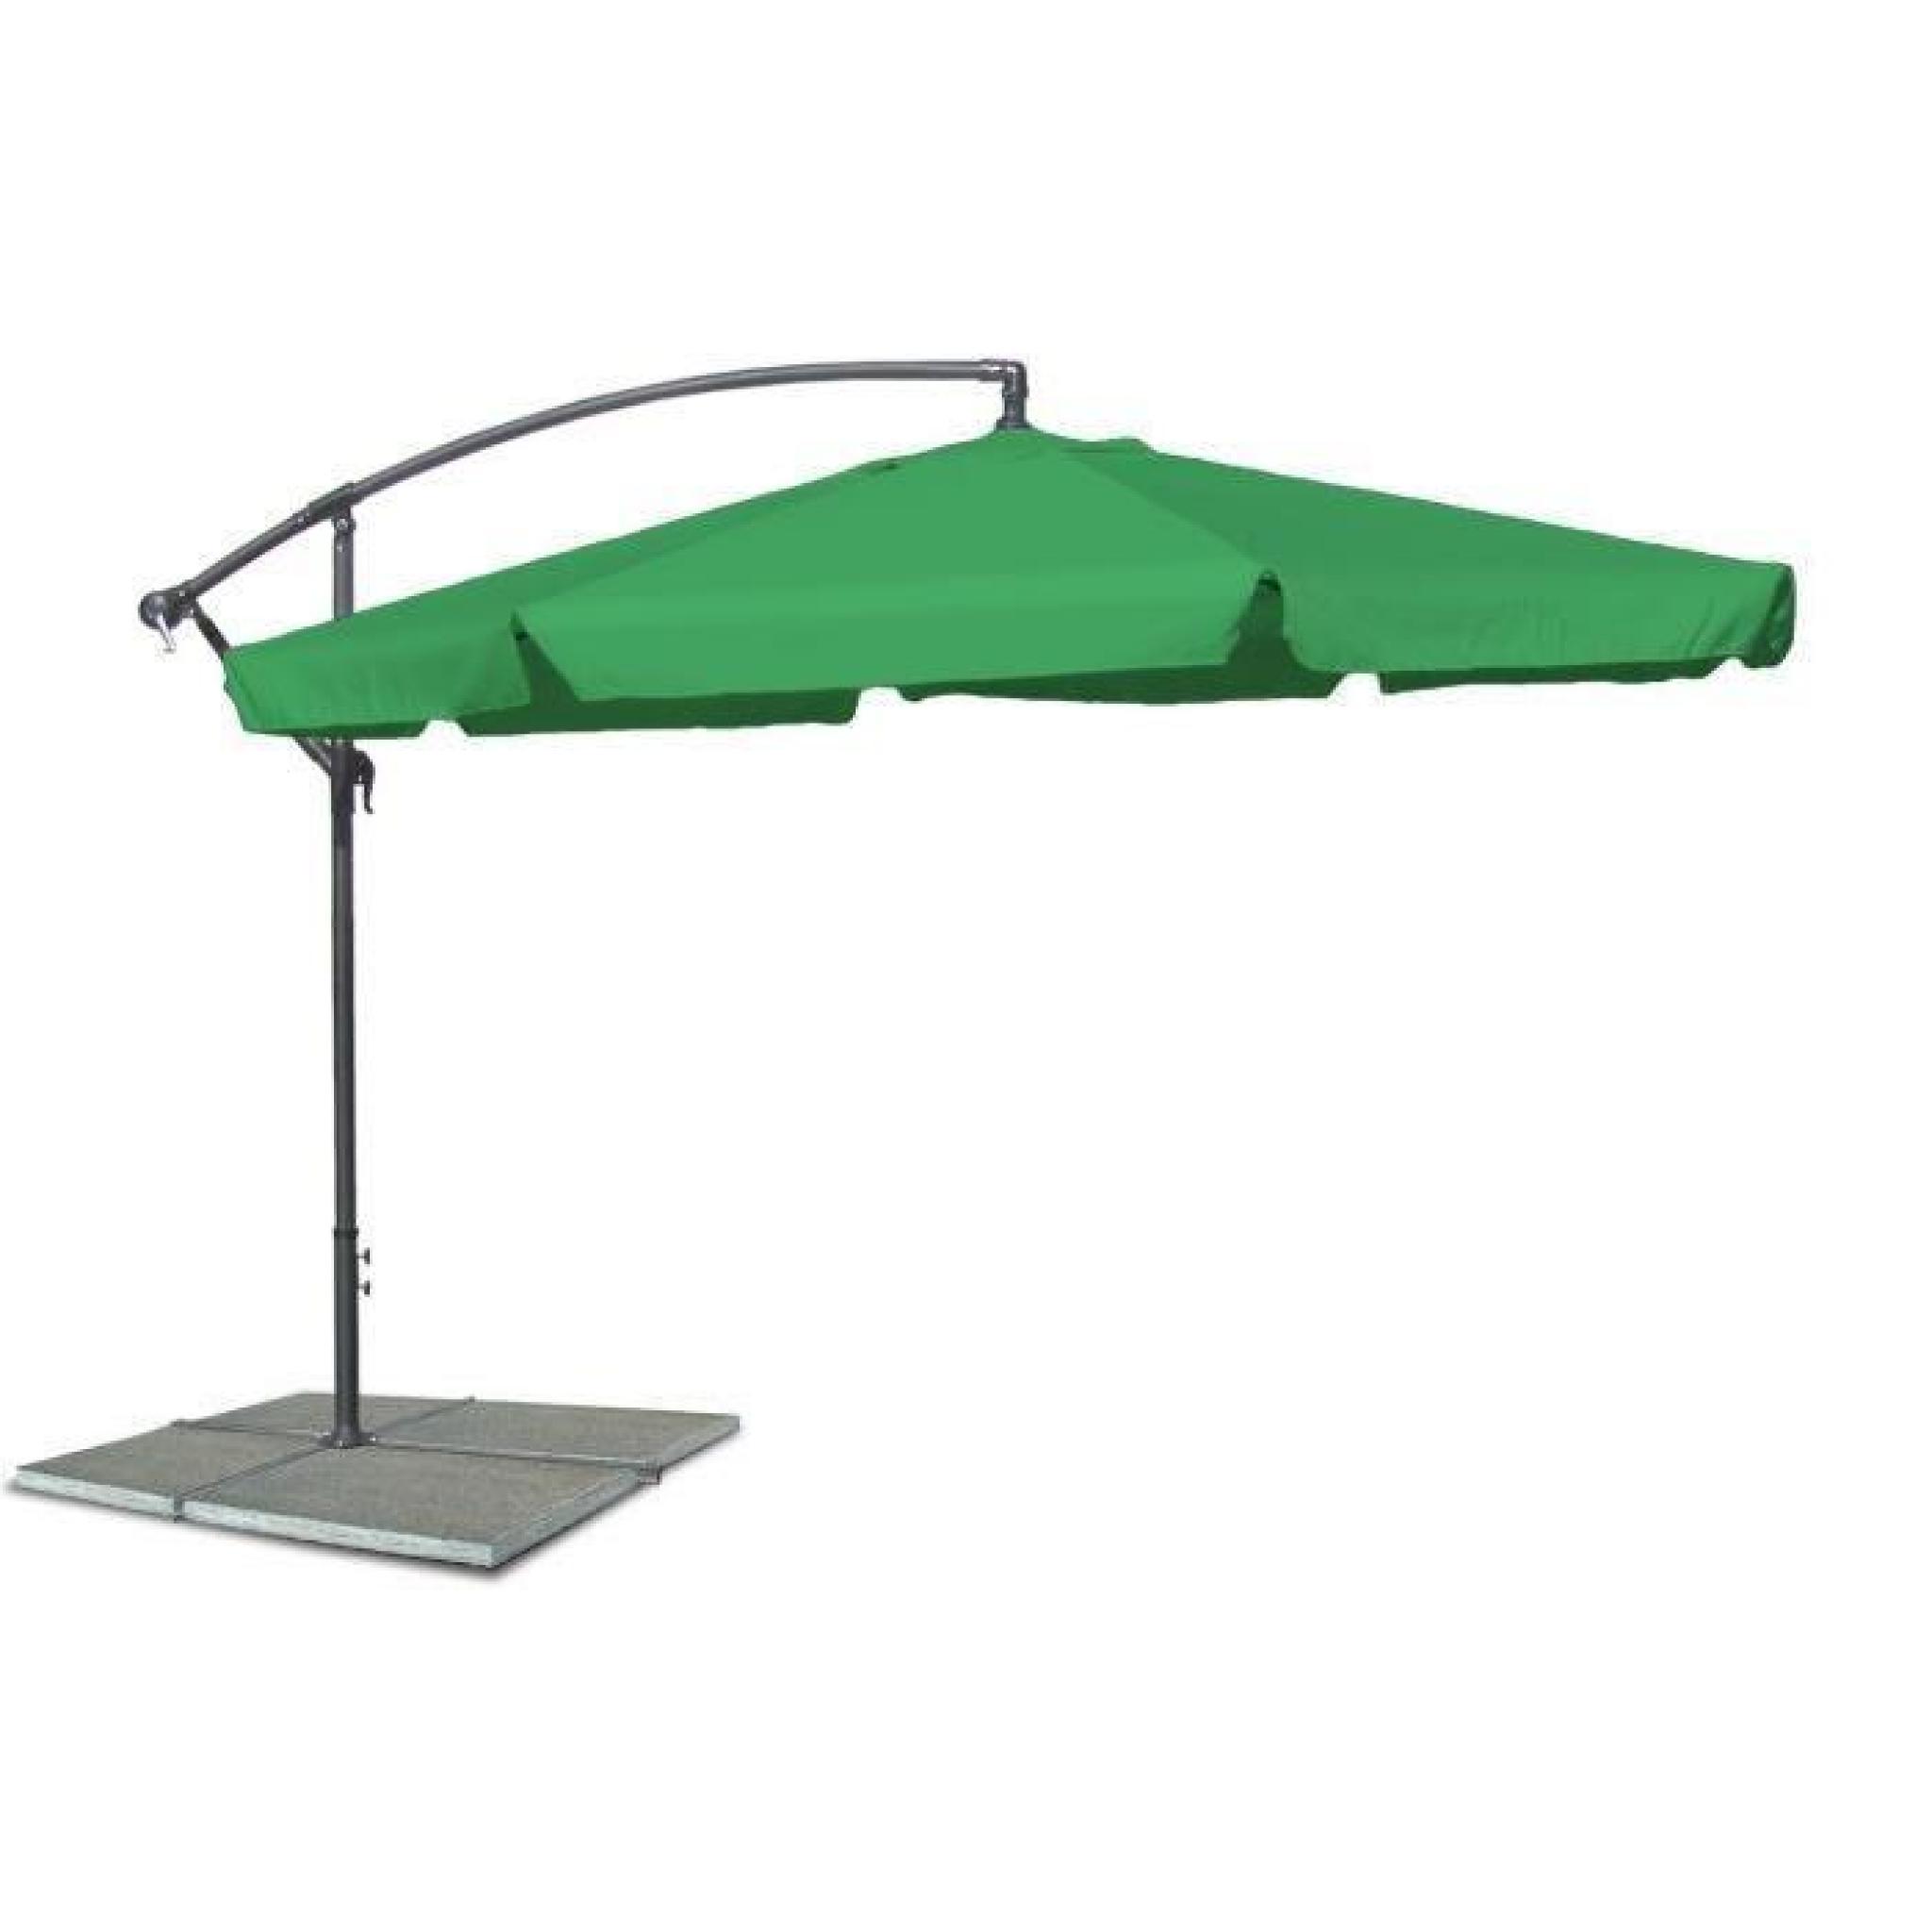 Parasol excentre, parapluie de plage avec 300 cm de diametre en vert, Materiau Polyester 160G, resistant a l'eau, croisi